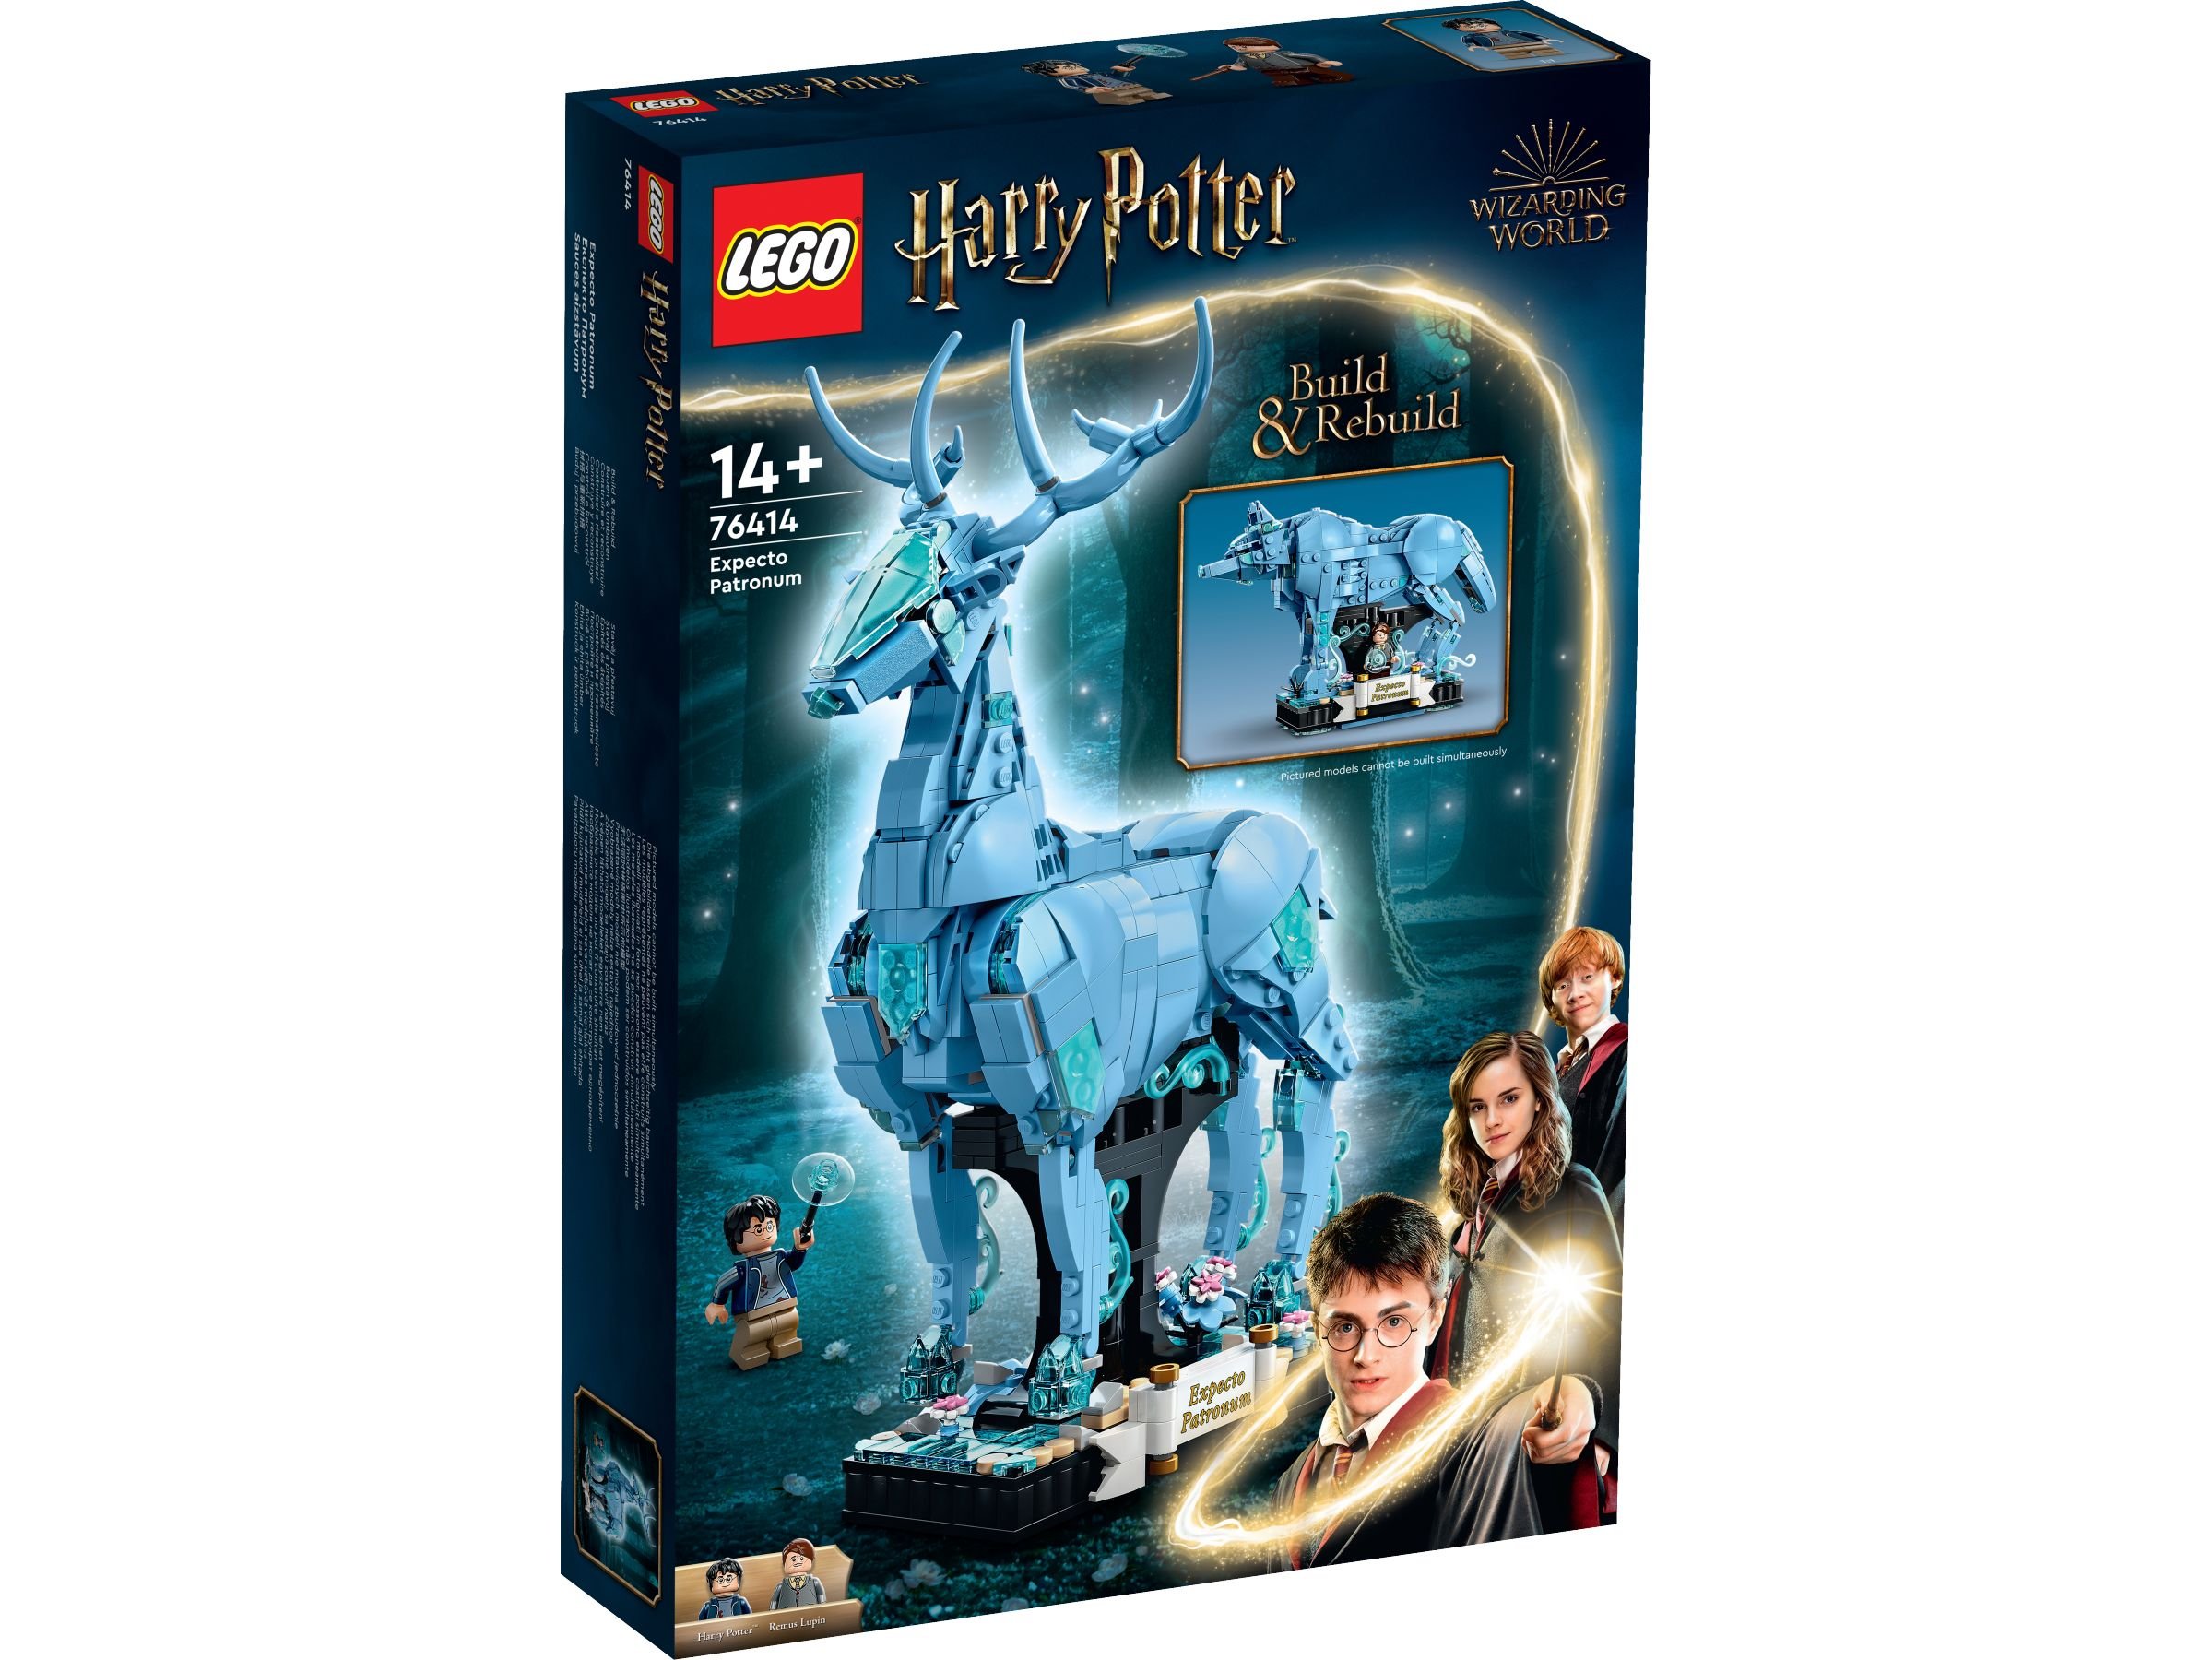 LEGO Harry Potter 76414 Expecto Patronum LEGO_76414_Box1_v29.jpg